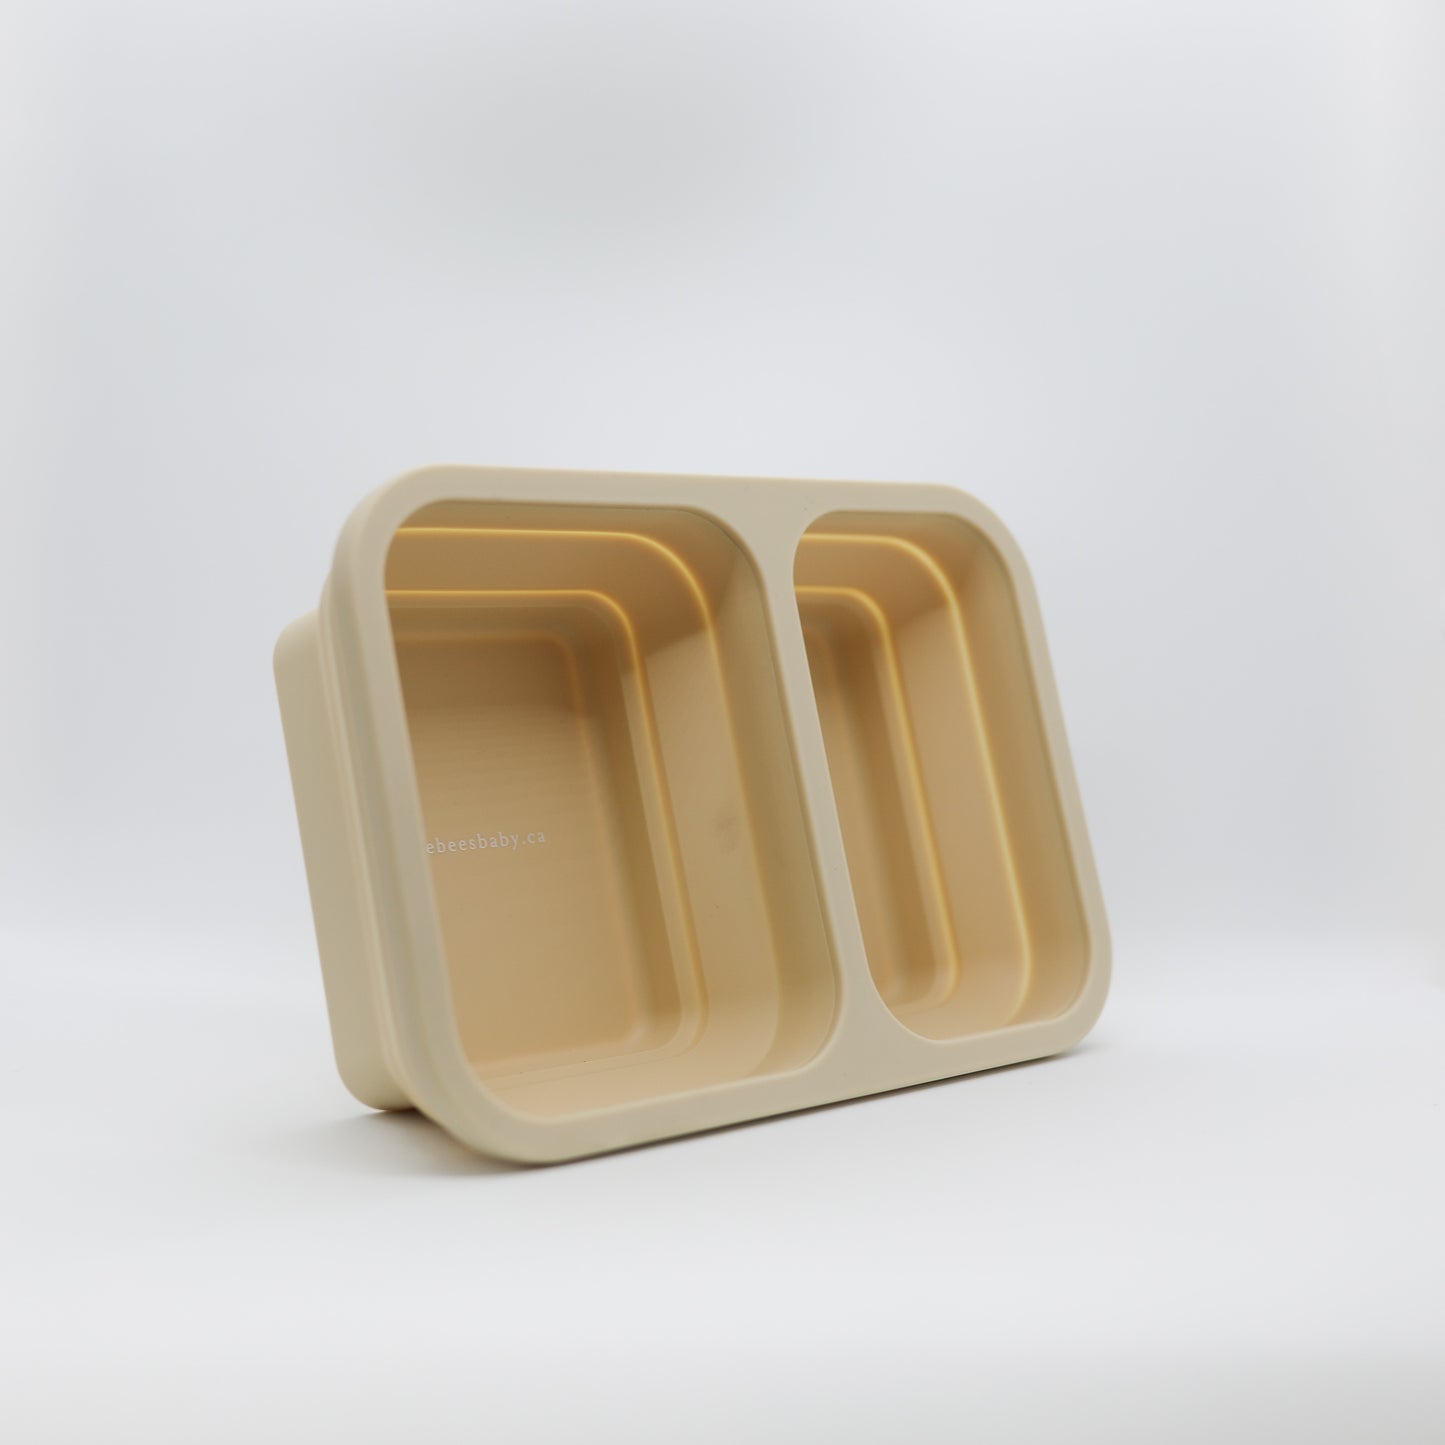 Foldable Bento Box